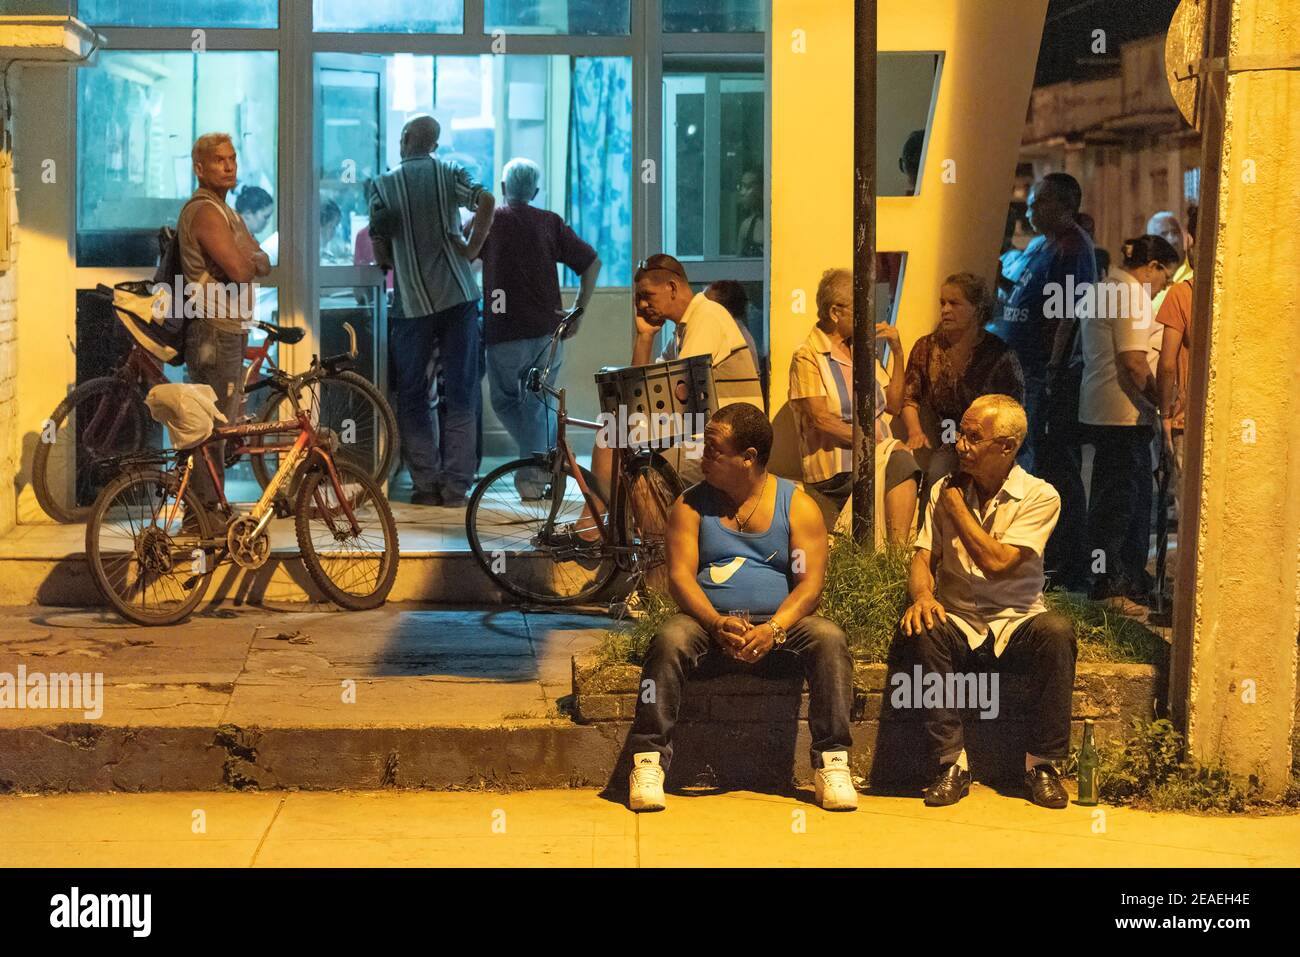 Personas que se alinean en una farmacia por la noche, Santa Clara, Cuba Foto de stock